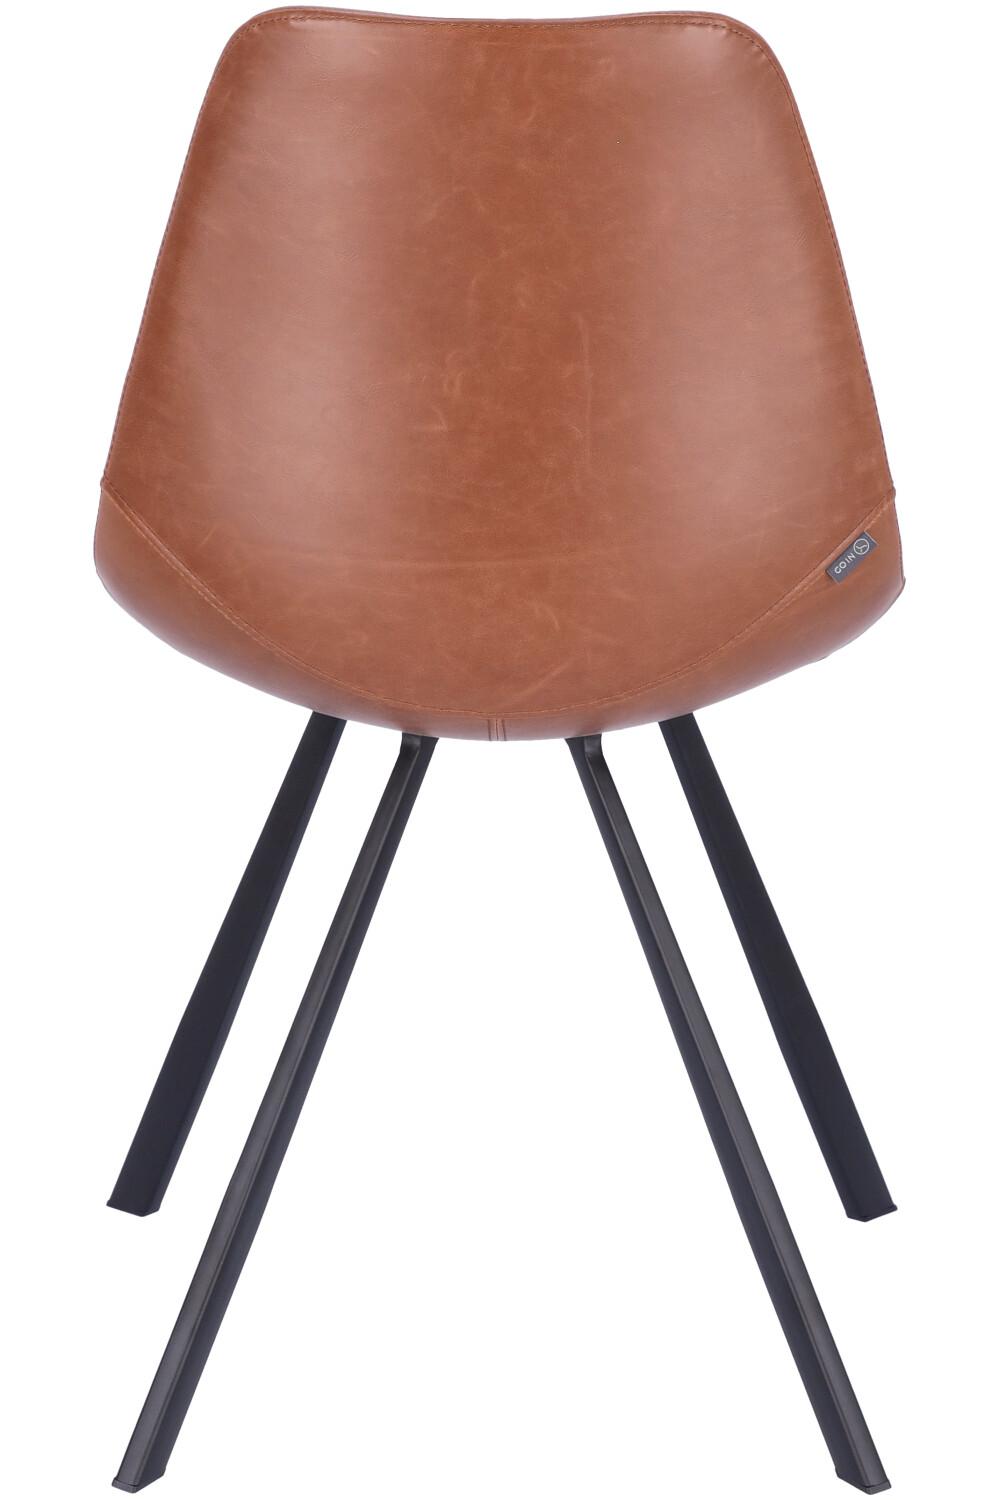 Abbildung Stuhl Tembo Rückansicht